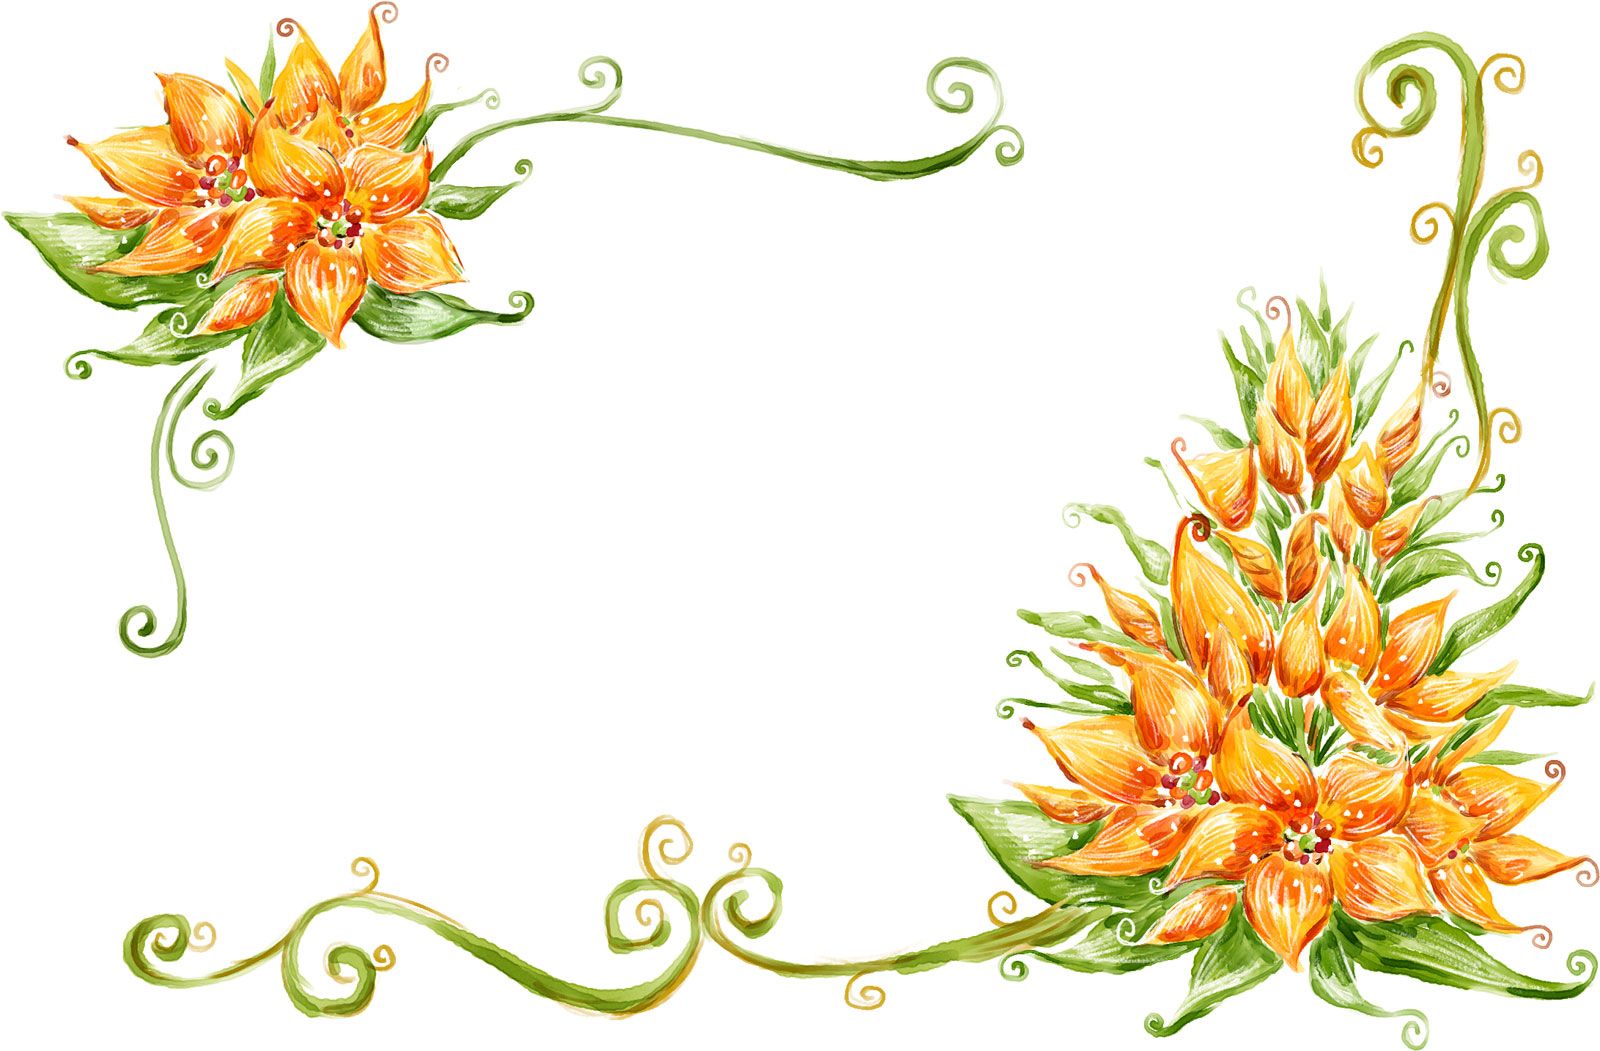 オレンジ色の花のイラスト フリー素材 No 165 手書き風 背景なし